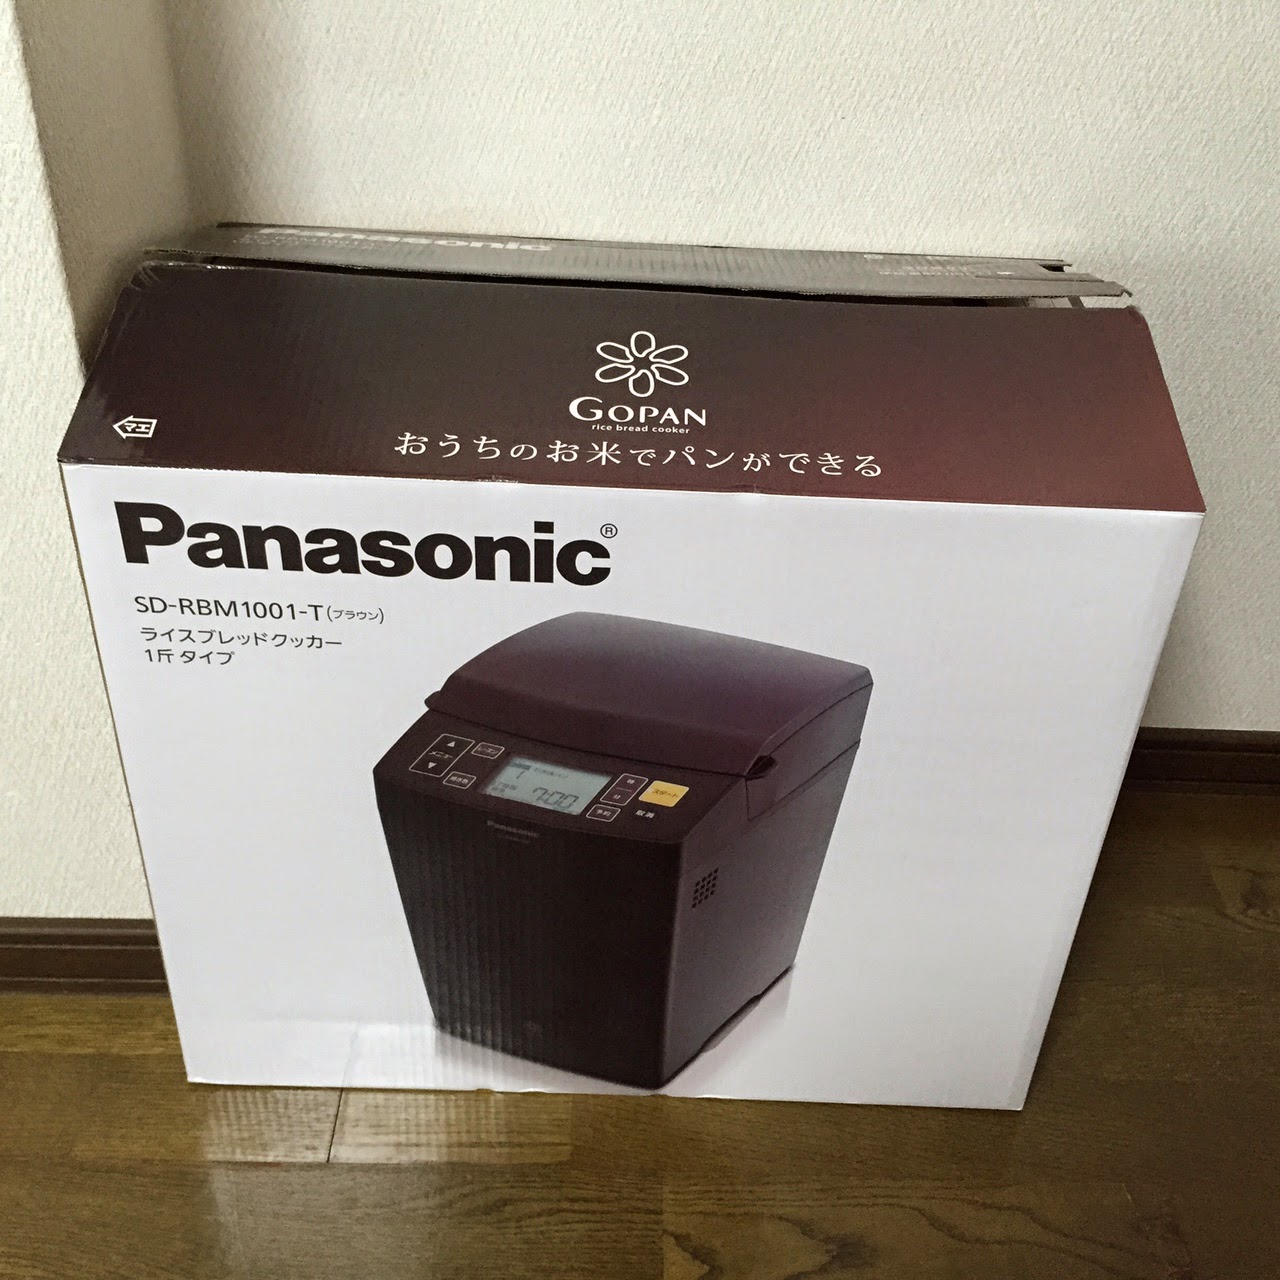 まいどおおきに: Panasonic GOPAN(ゴパン) ライスブレッドクッカー ブラウン 1斤タイプ SD-RBM1001-T